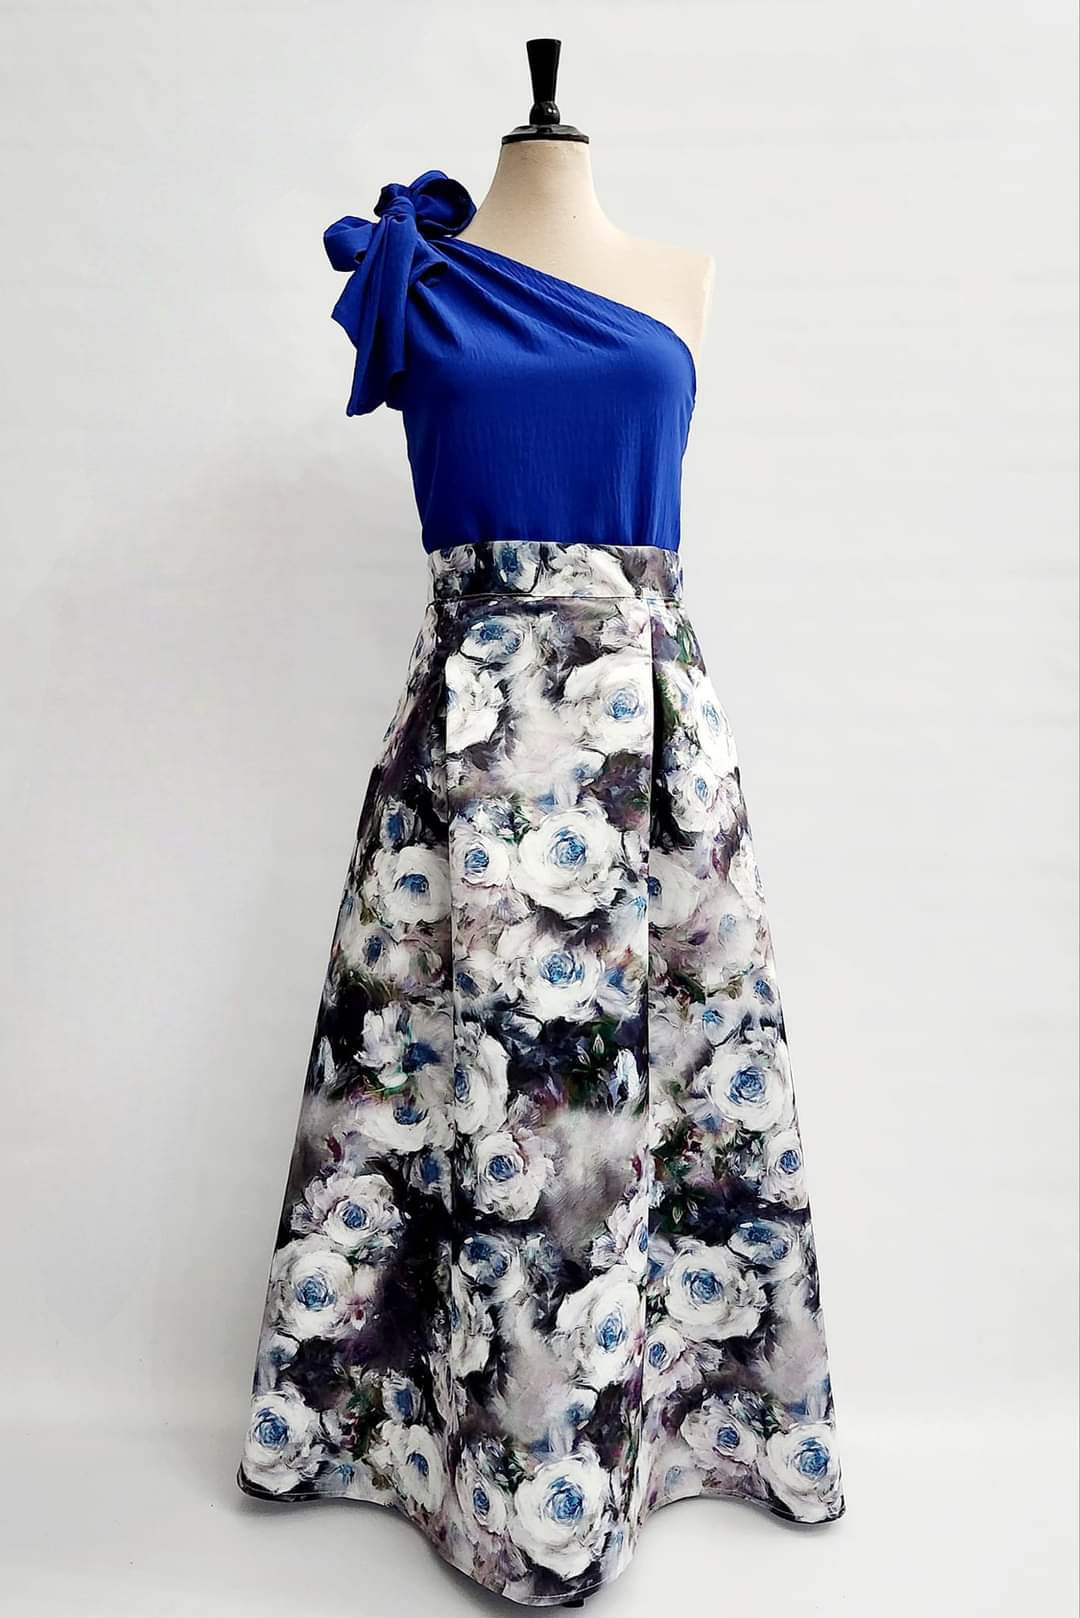 Jardin Duchess Skirt - Blue floral